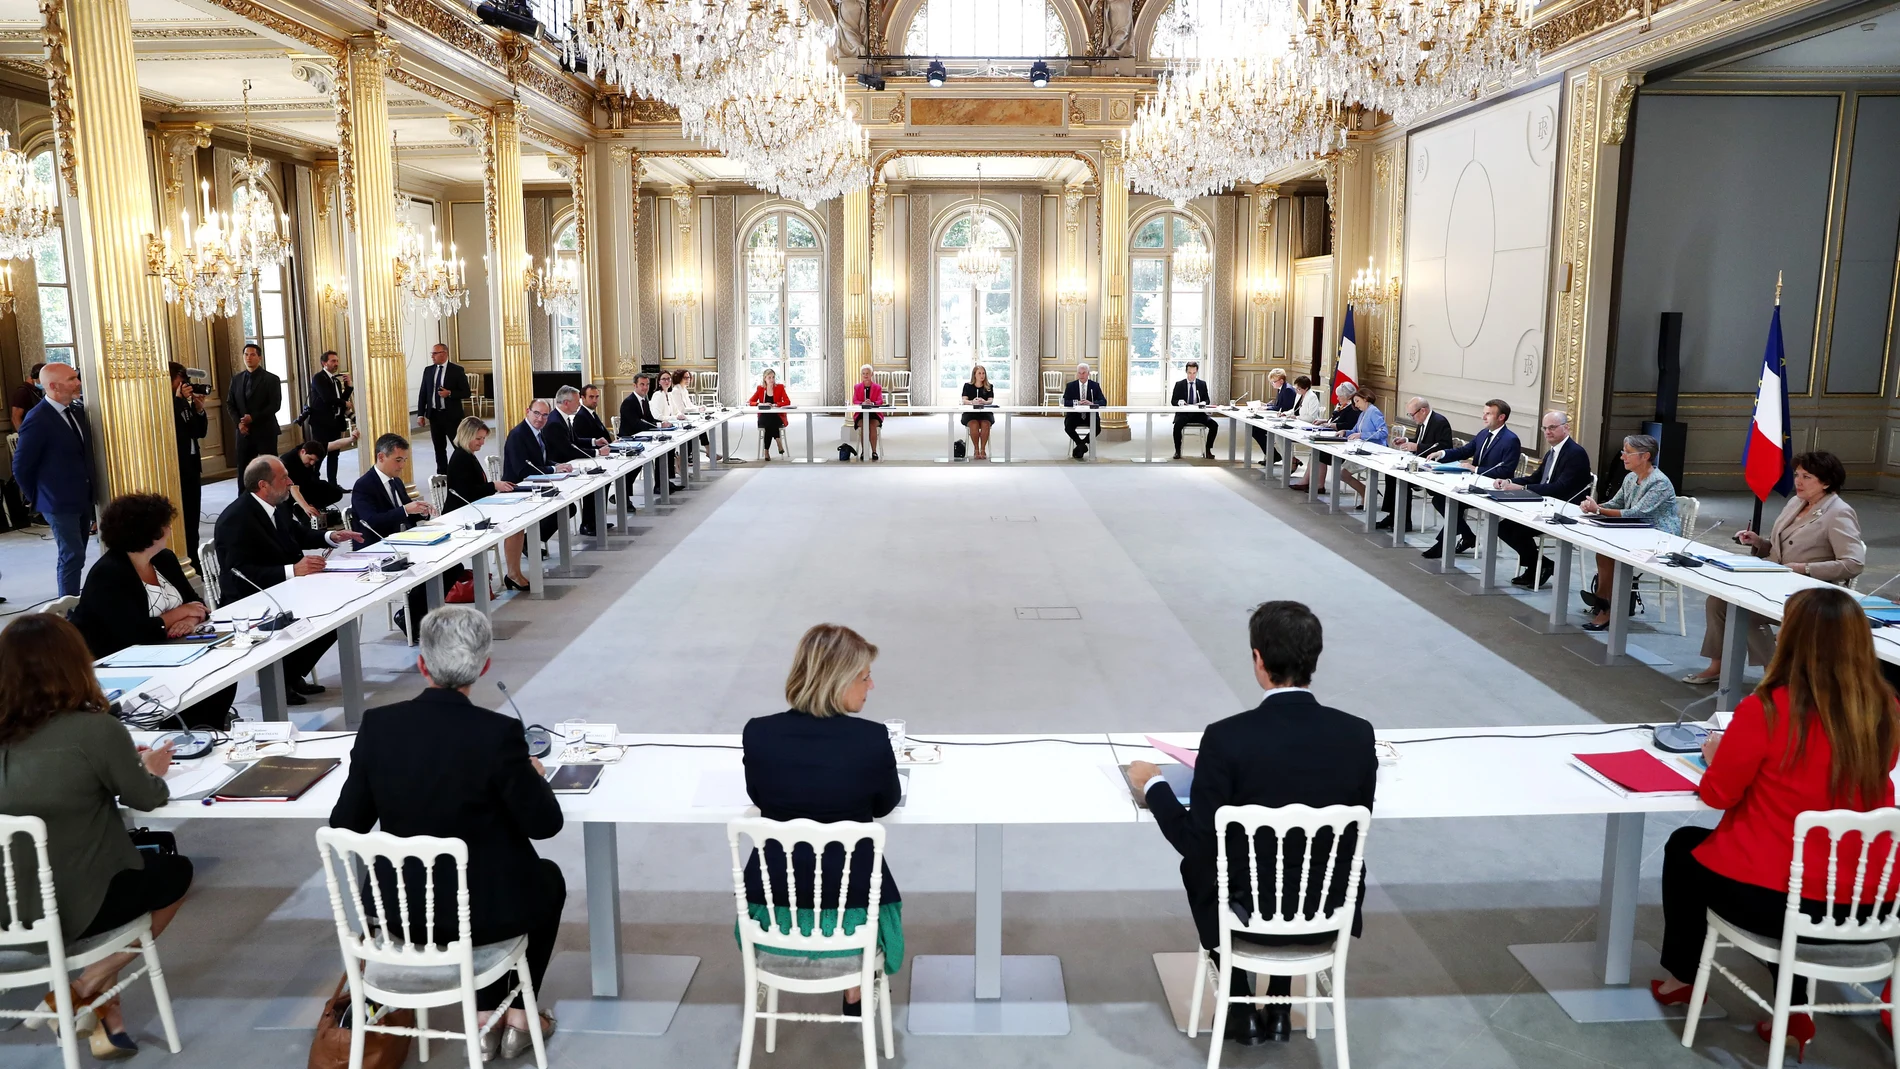 El presidente francés, Emmanuel Macron, preside el primer Consejo de Ministros de su nuevo Gobierno esta tarde en el Palacio del Elíseo